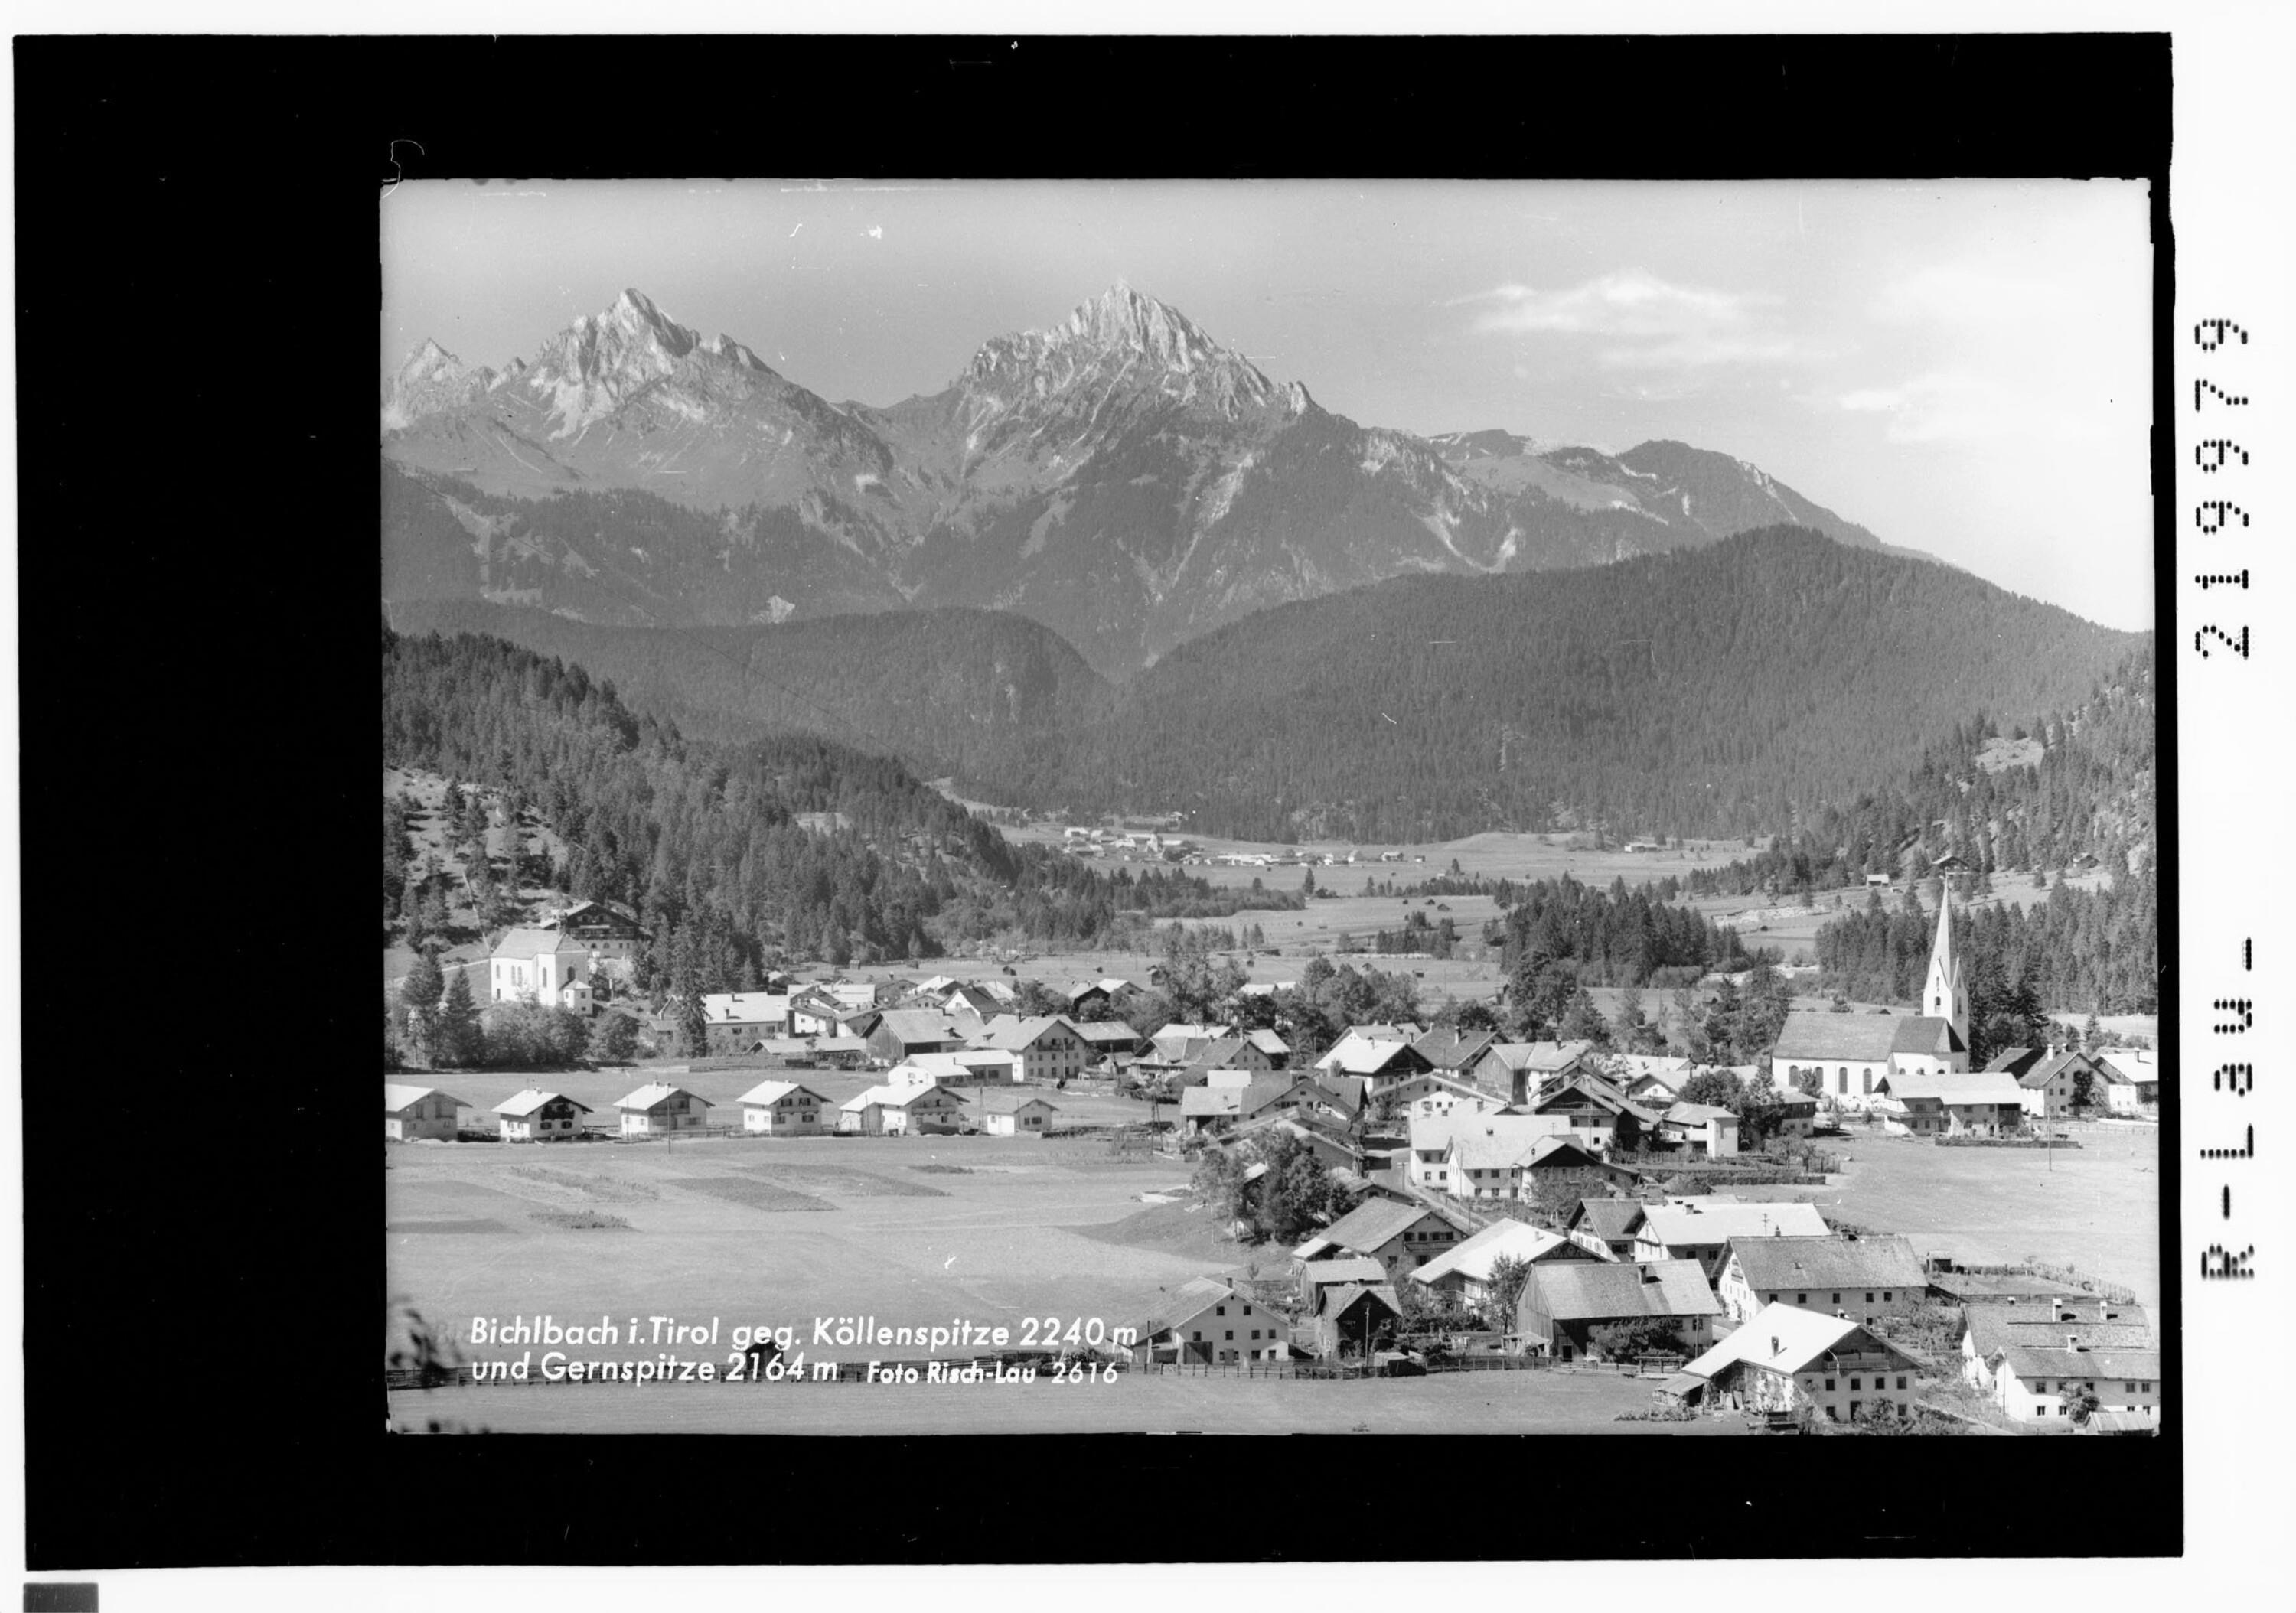 Bichlbach in Tirol gegen Köllenspitze 2240 m und Gernspitze 2164 m></div>


    <hr>
    <div class=